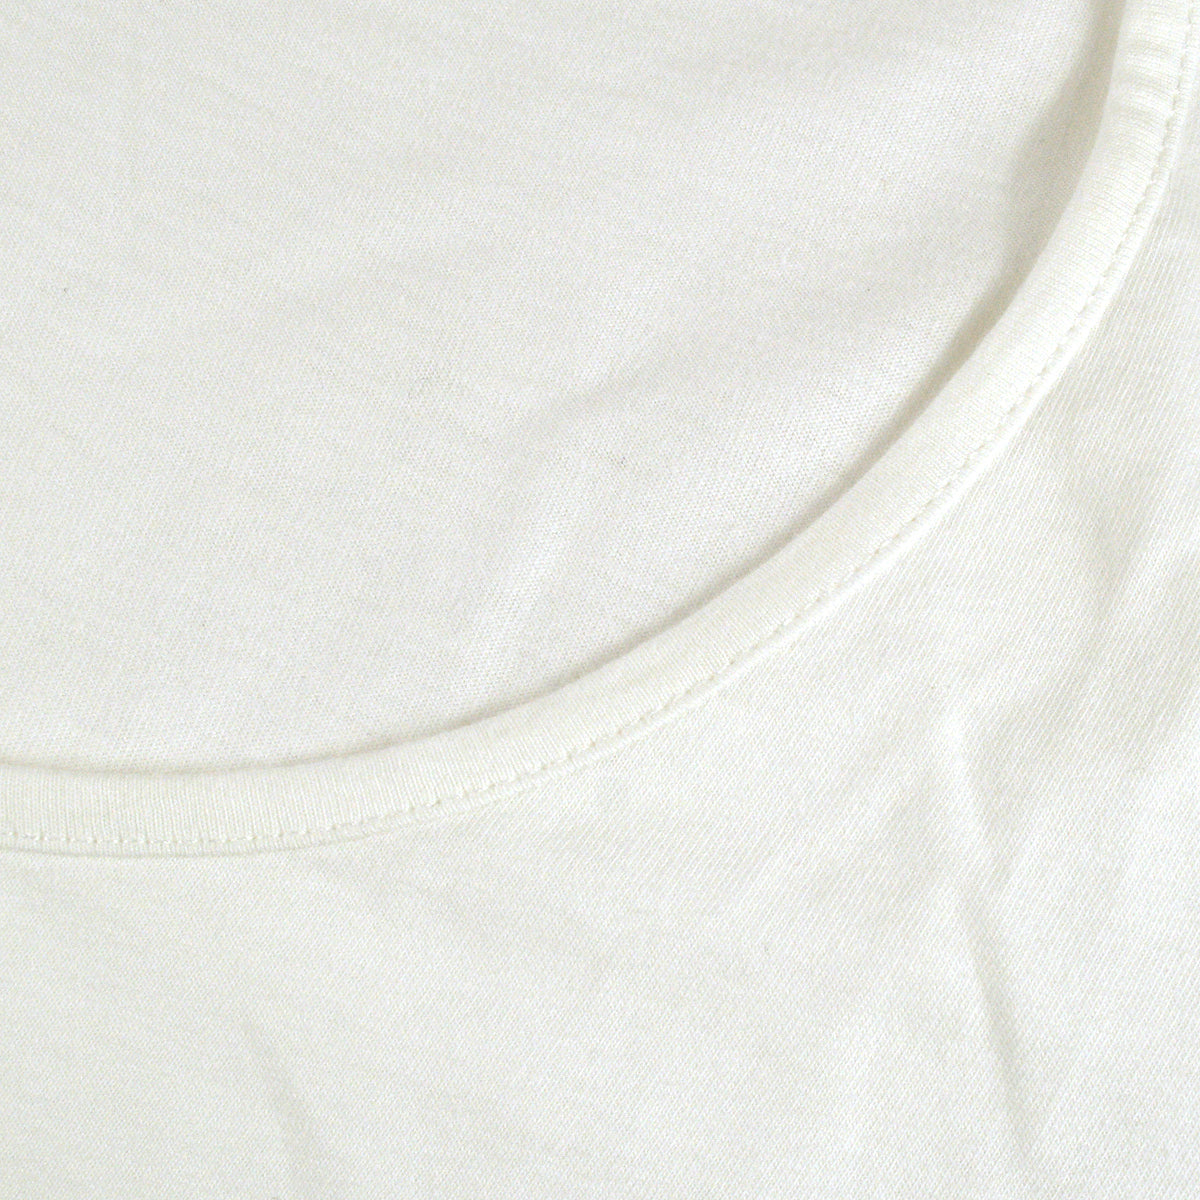 Fendi T-shirt White 